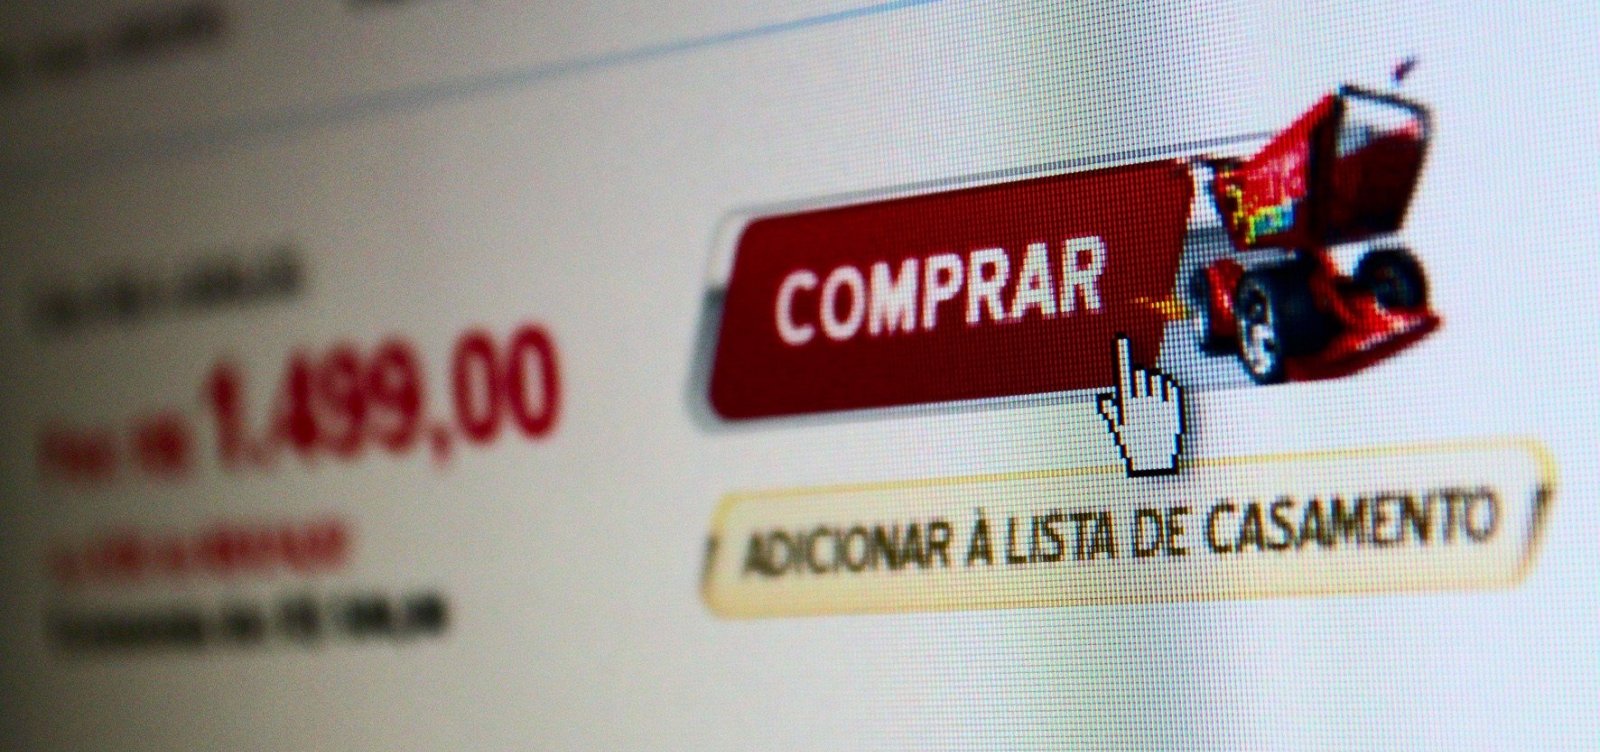 Brasil registra mais de 920 mil fraudes virtuais em cartões de crédito